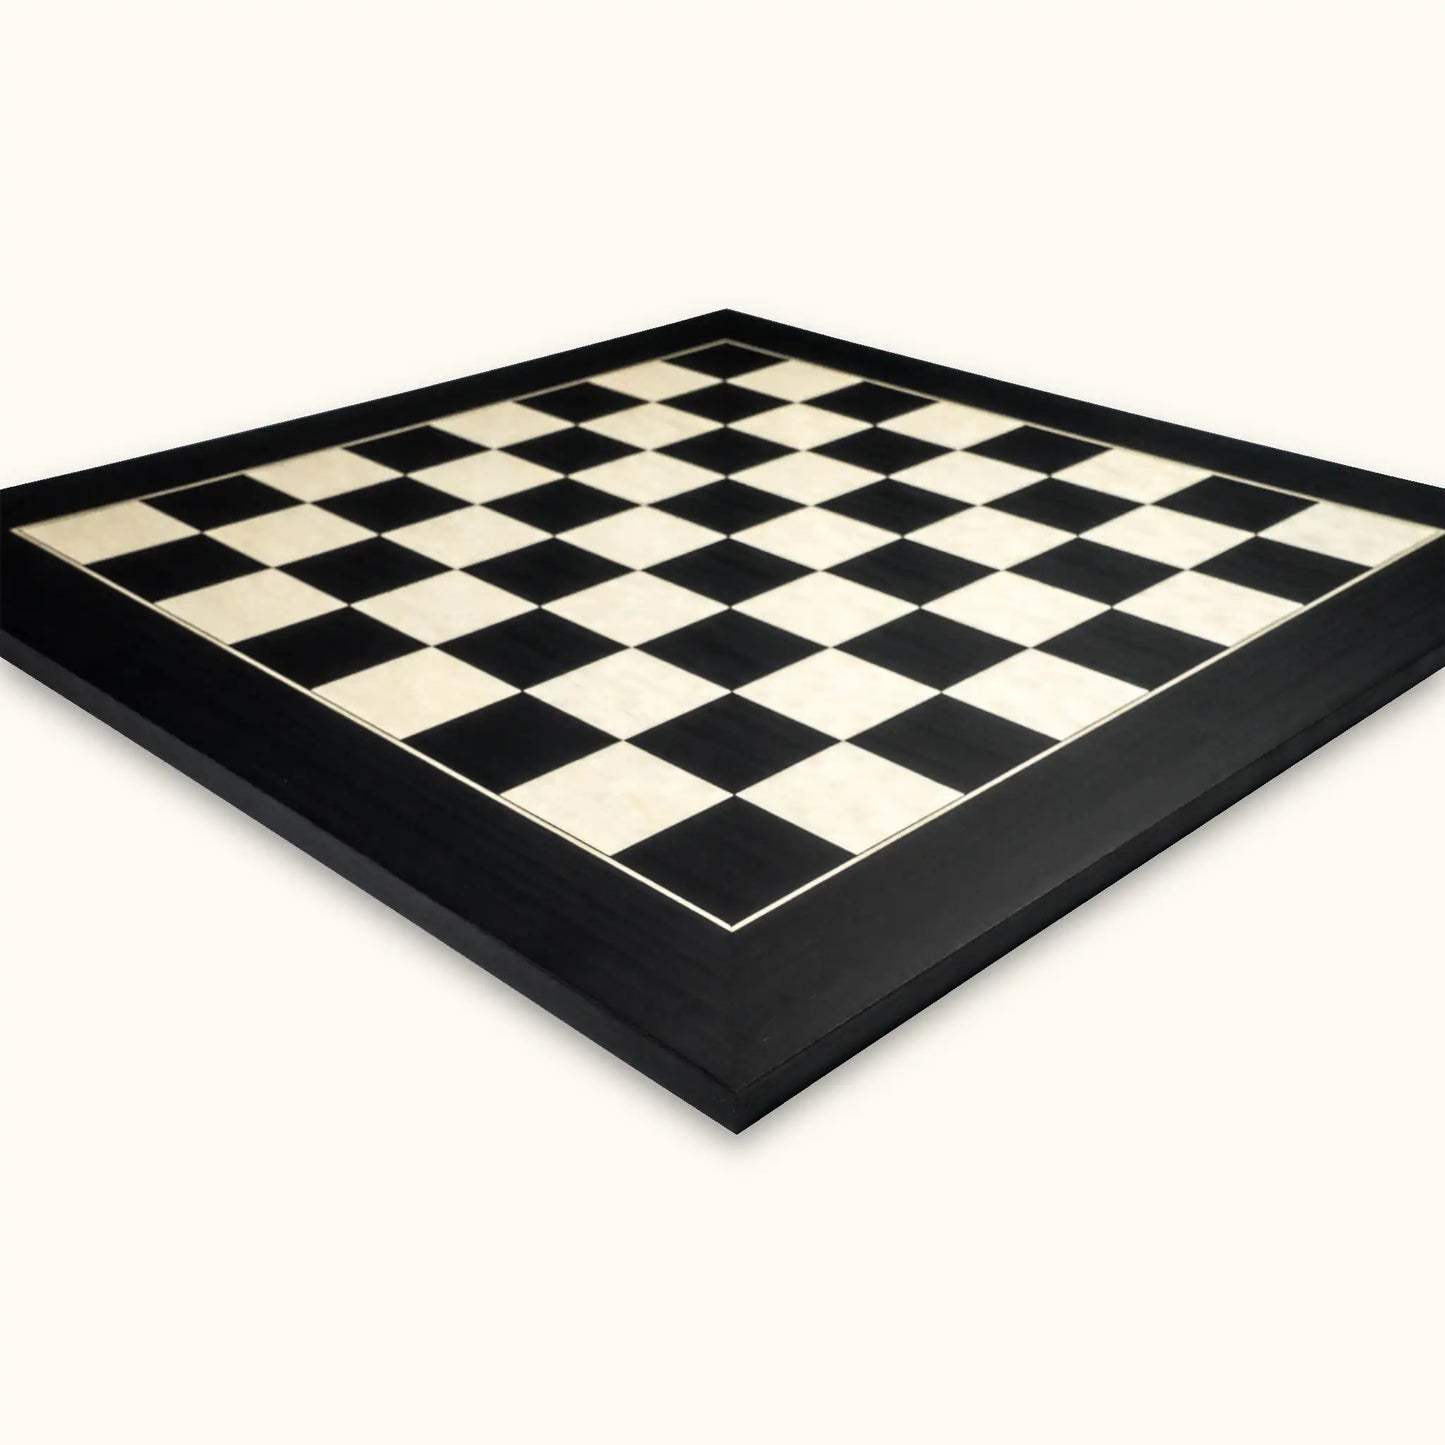 Chessboard Black Deluxe 55 mm poplar maple side view